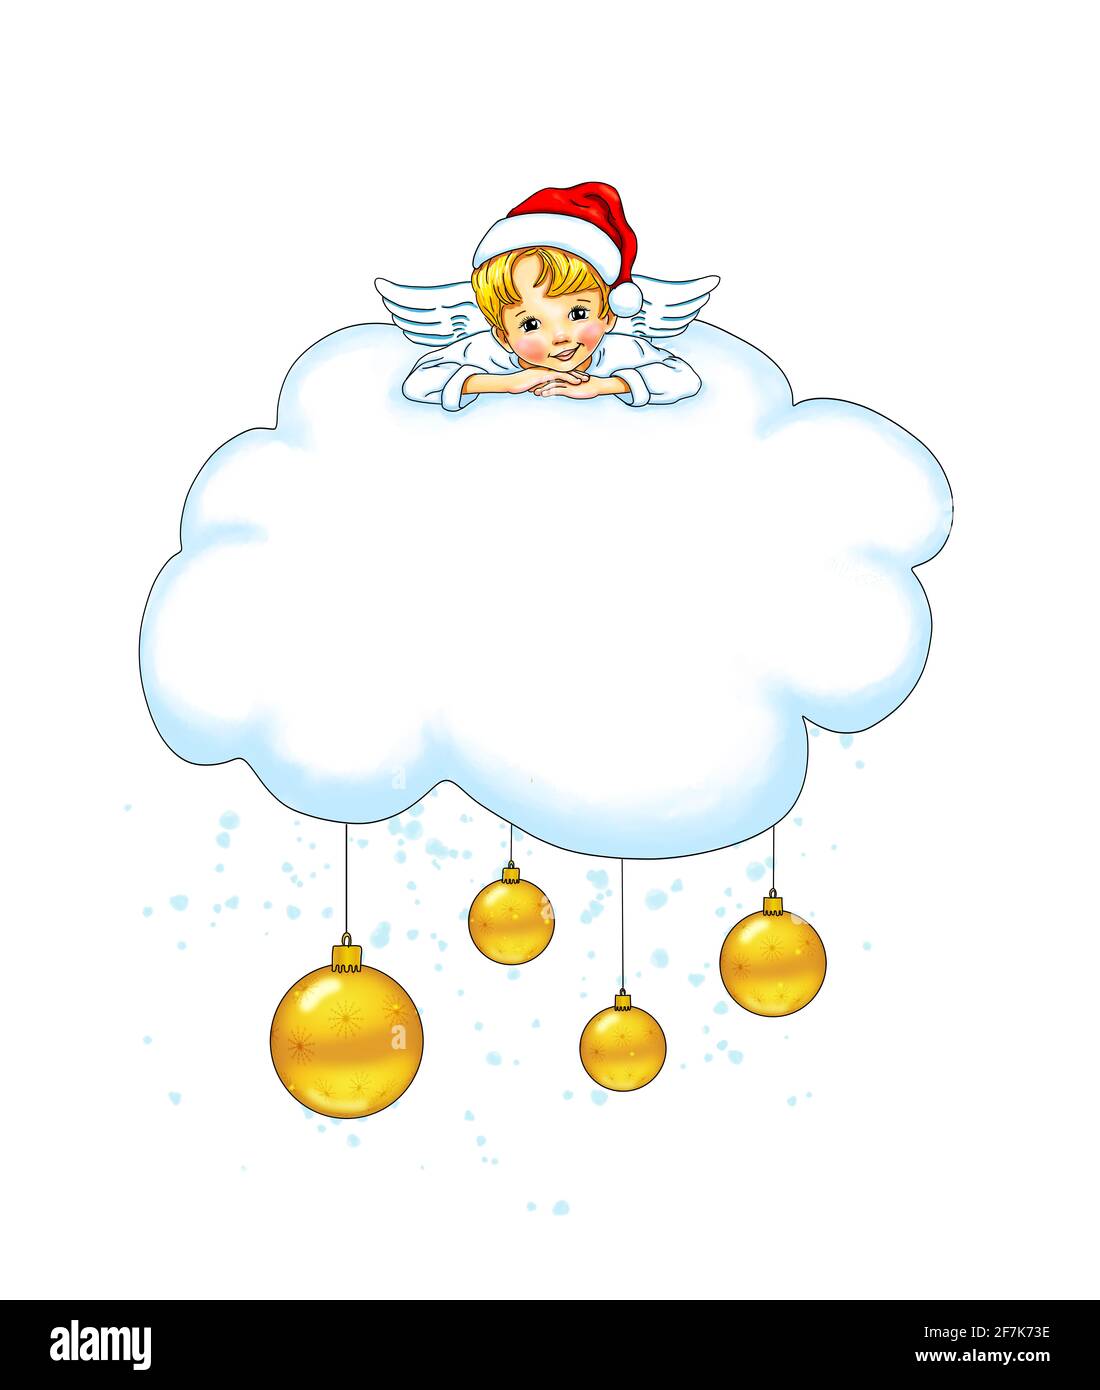 Vorlage kleiner Engel niedlich süß hübsch liegt lächelnd Wolke weihnachten weihnachtsmann Hut Blase Banner Urlaub Werbung Mock up, Layout, festlich schmücken Stockfoto